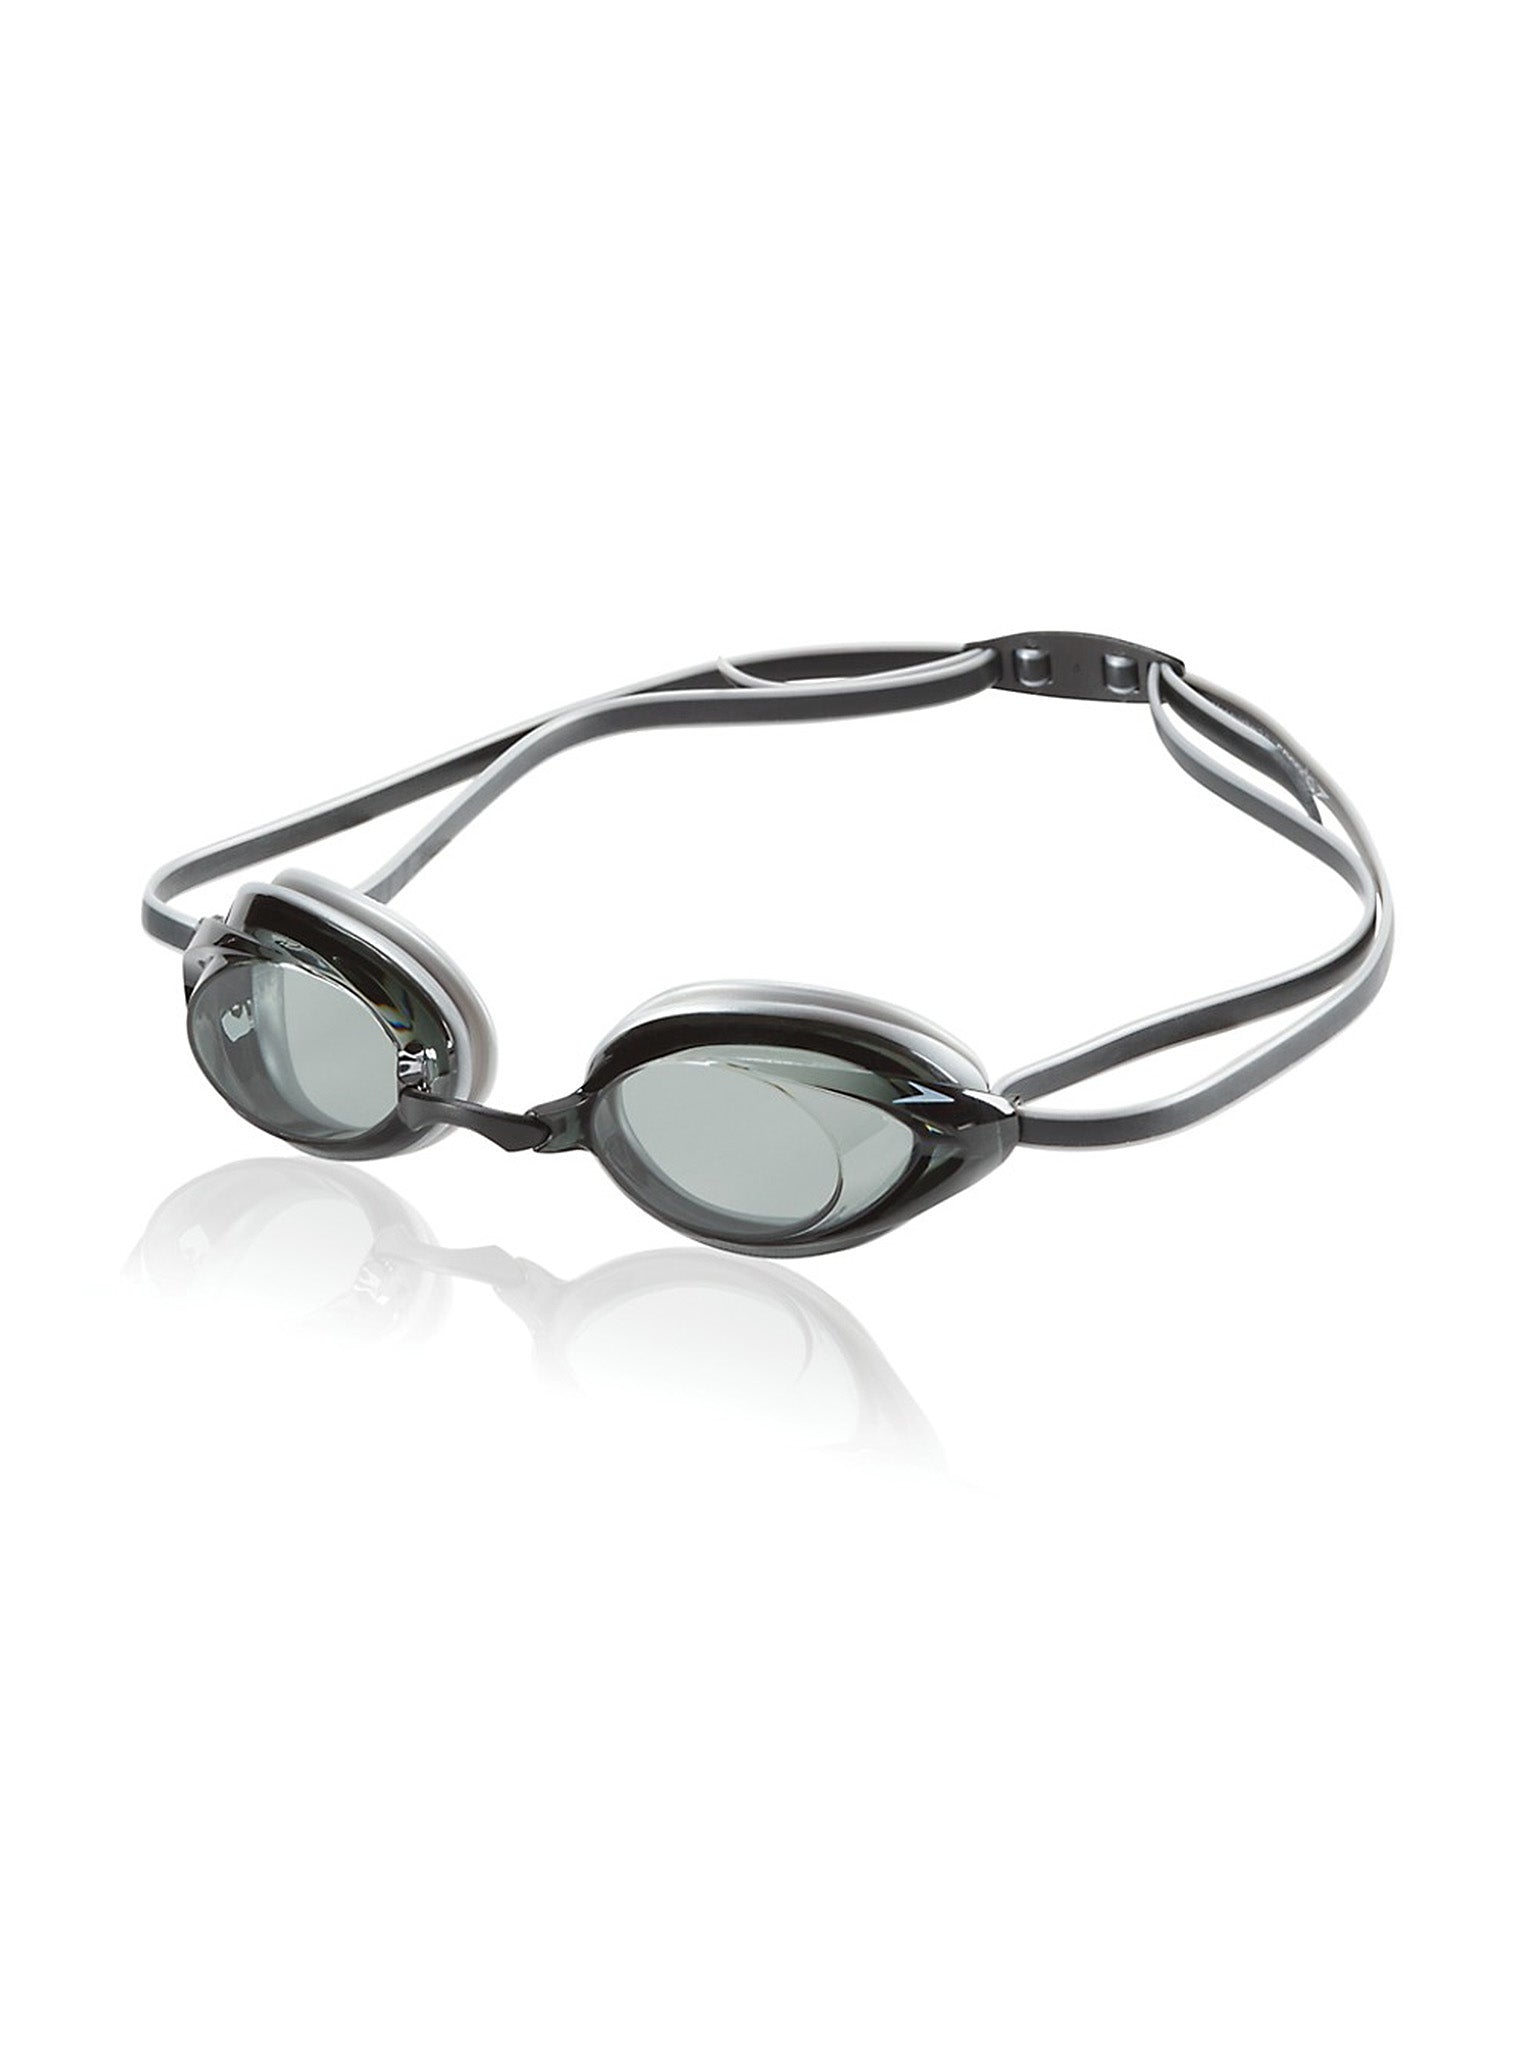 Vanquisher 2.0 Swim Goggle